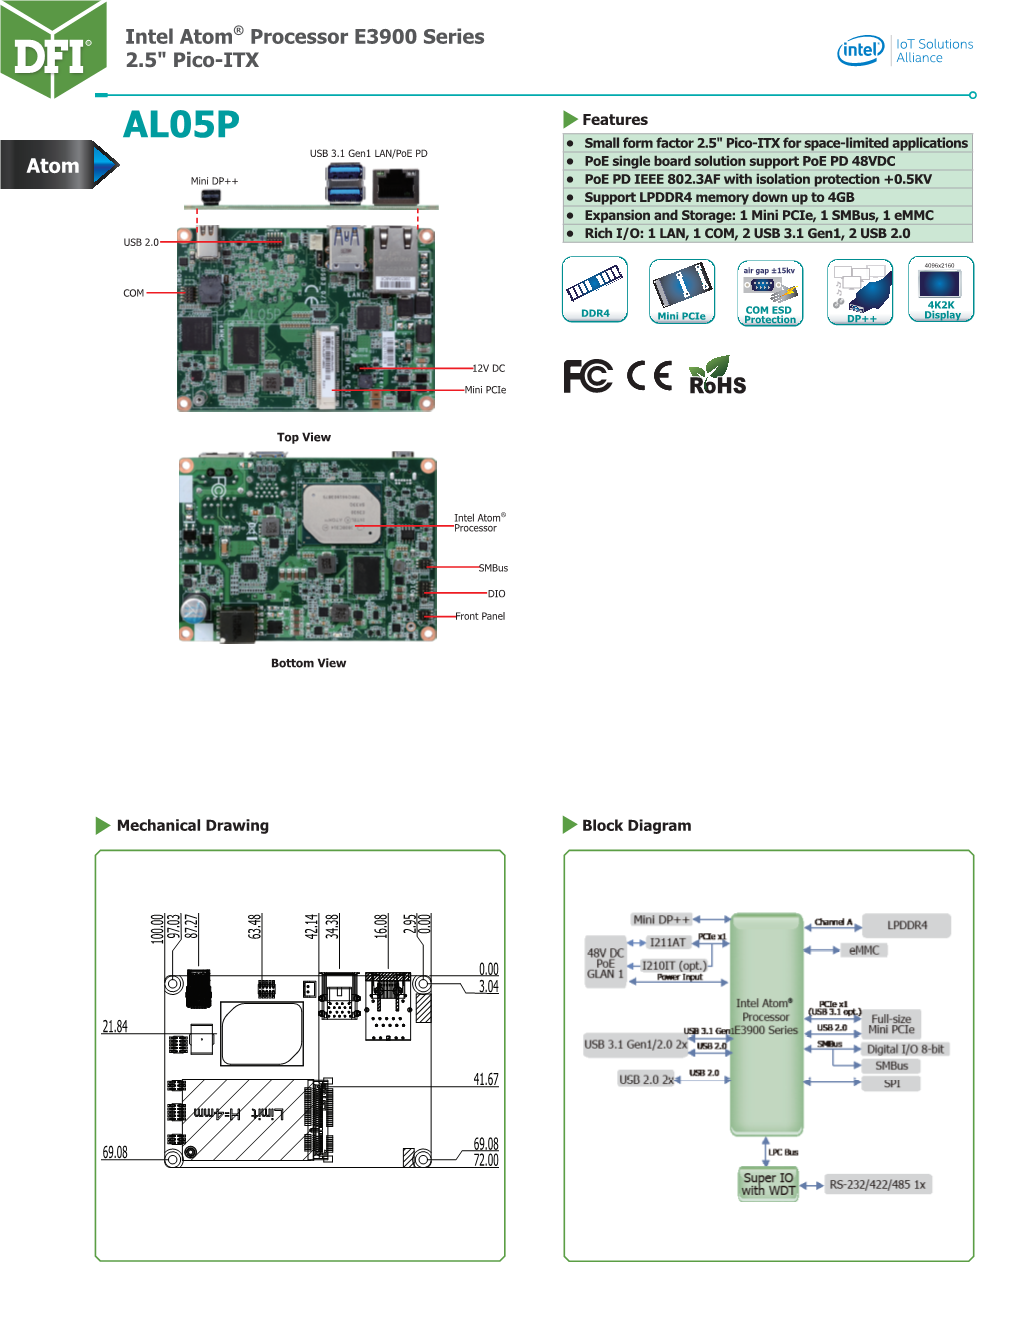 Intel Atom® Processor E3900 Series 2.5" Pico-ITX Atom